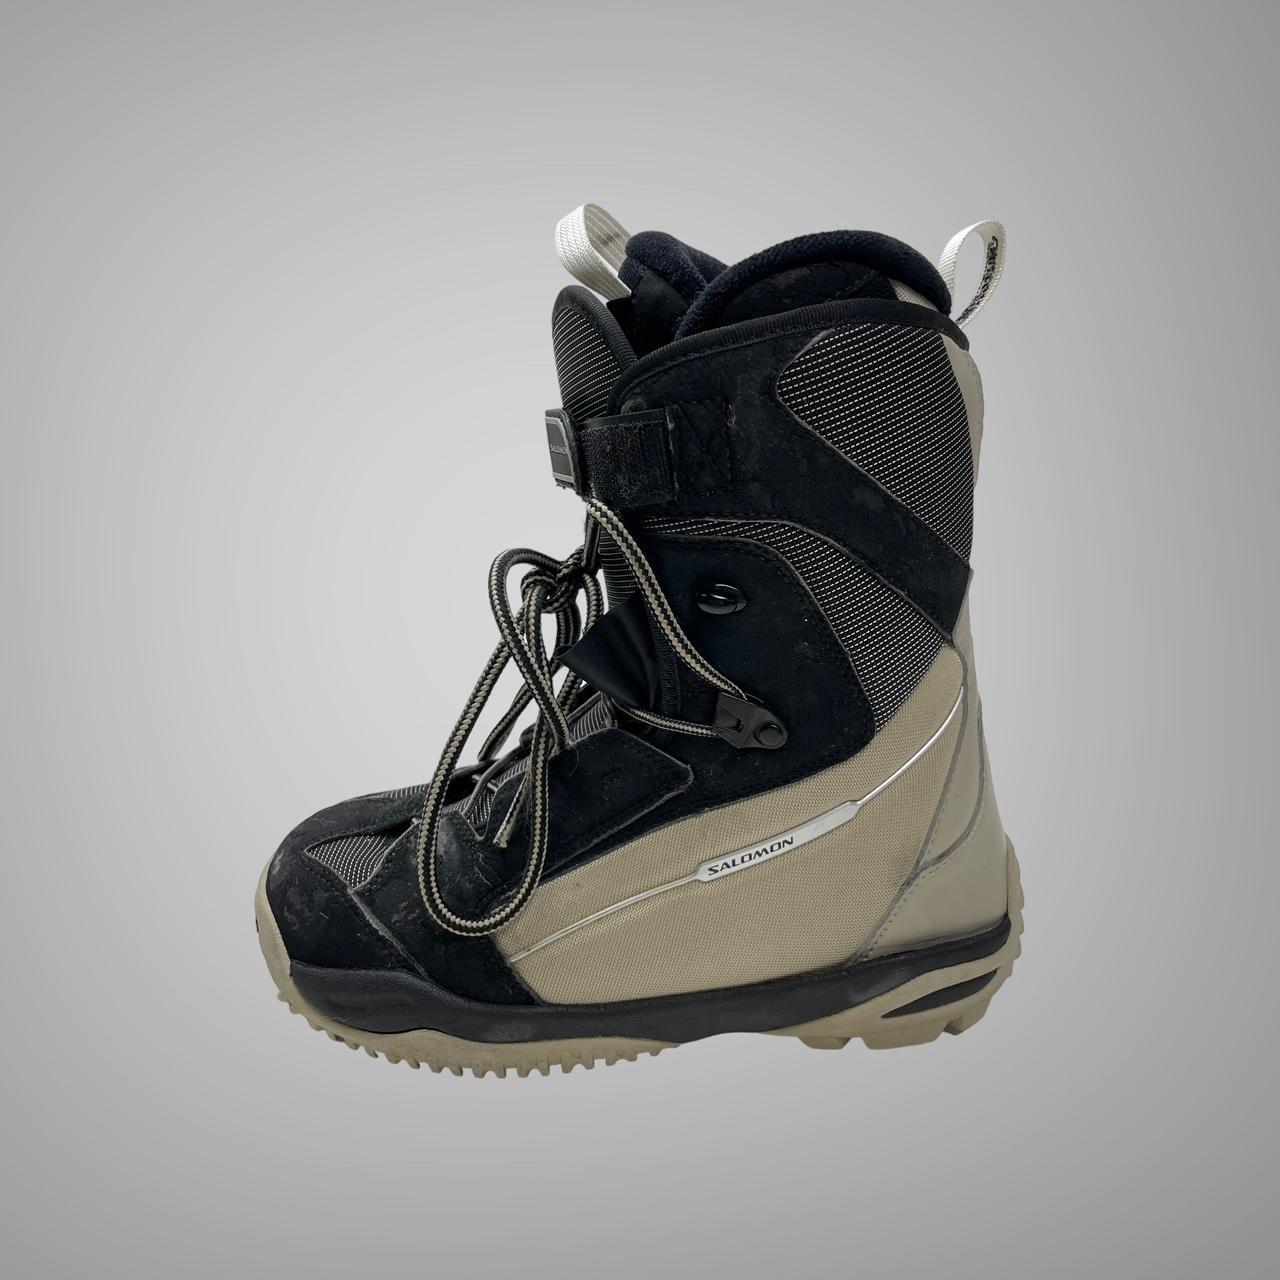 Vintage Salomon snow boots Size 6.5 uk Size 7.5... - Depop